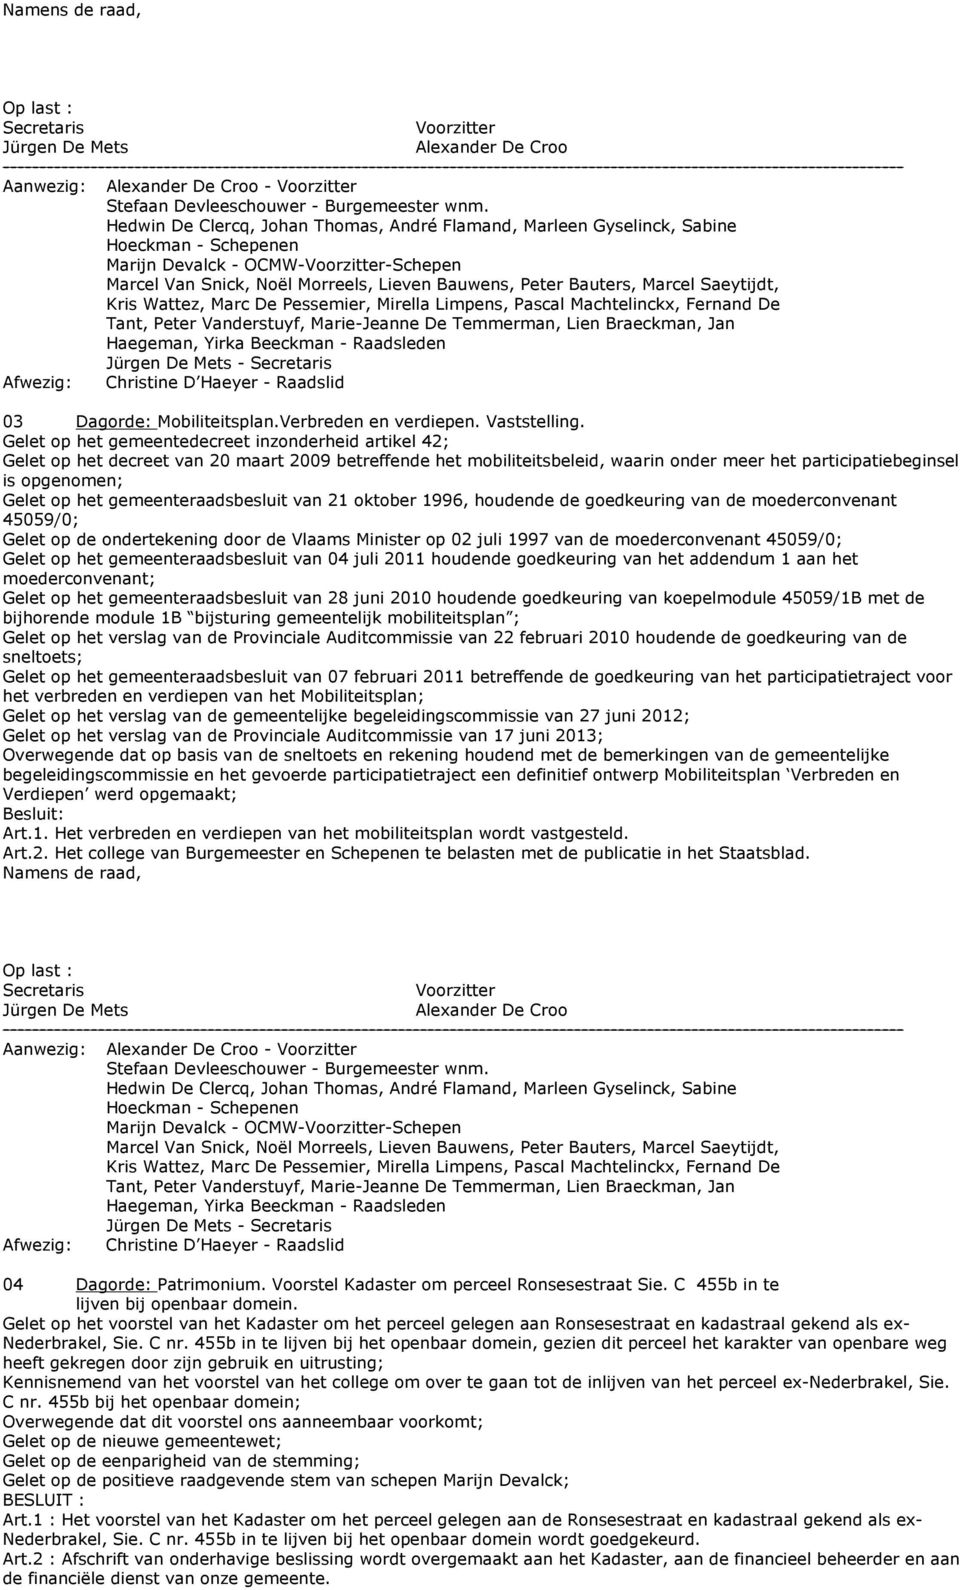 gemeenteraadsbesluit van 21 oktober 1996, houdende de goedkeuring van de moederconvenant 45059/0; Gelet op de ondertekening door de Vlaams Minister op 02 juli 1997 van de moederconvenant 45059/0;